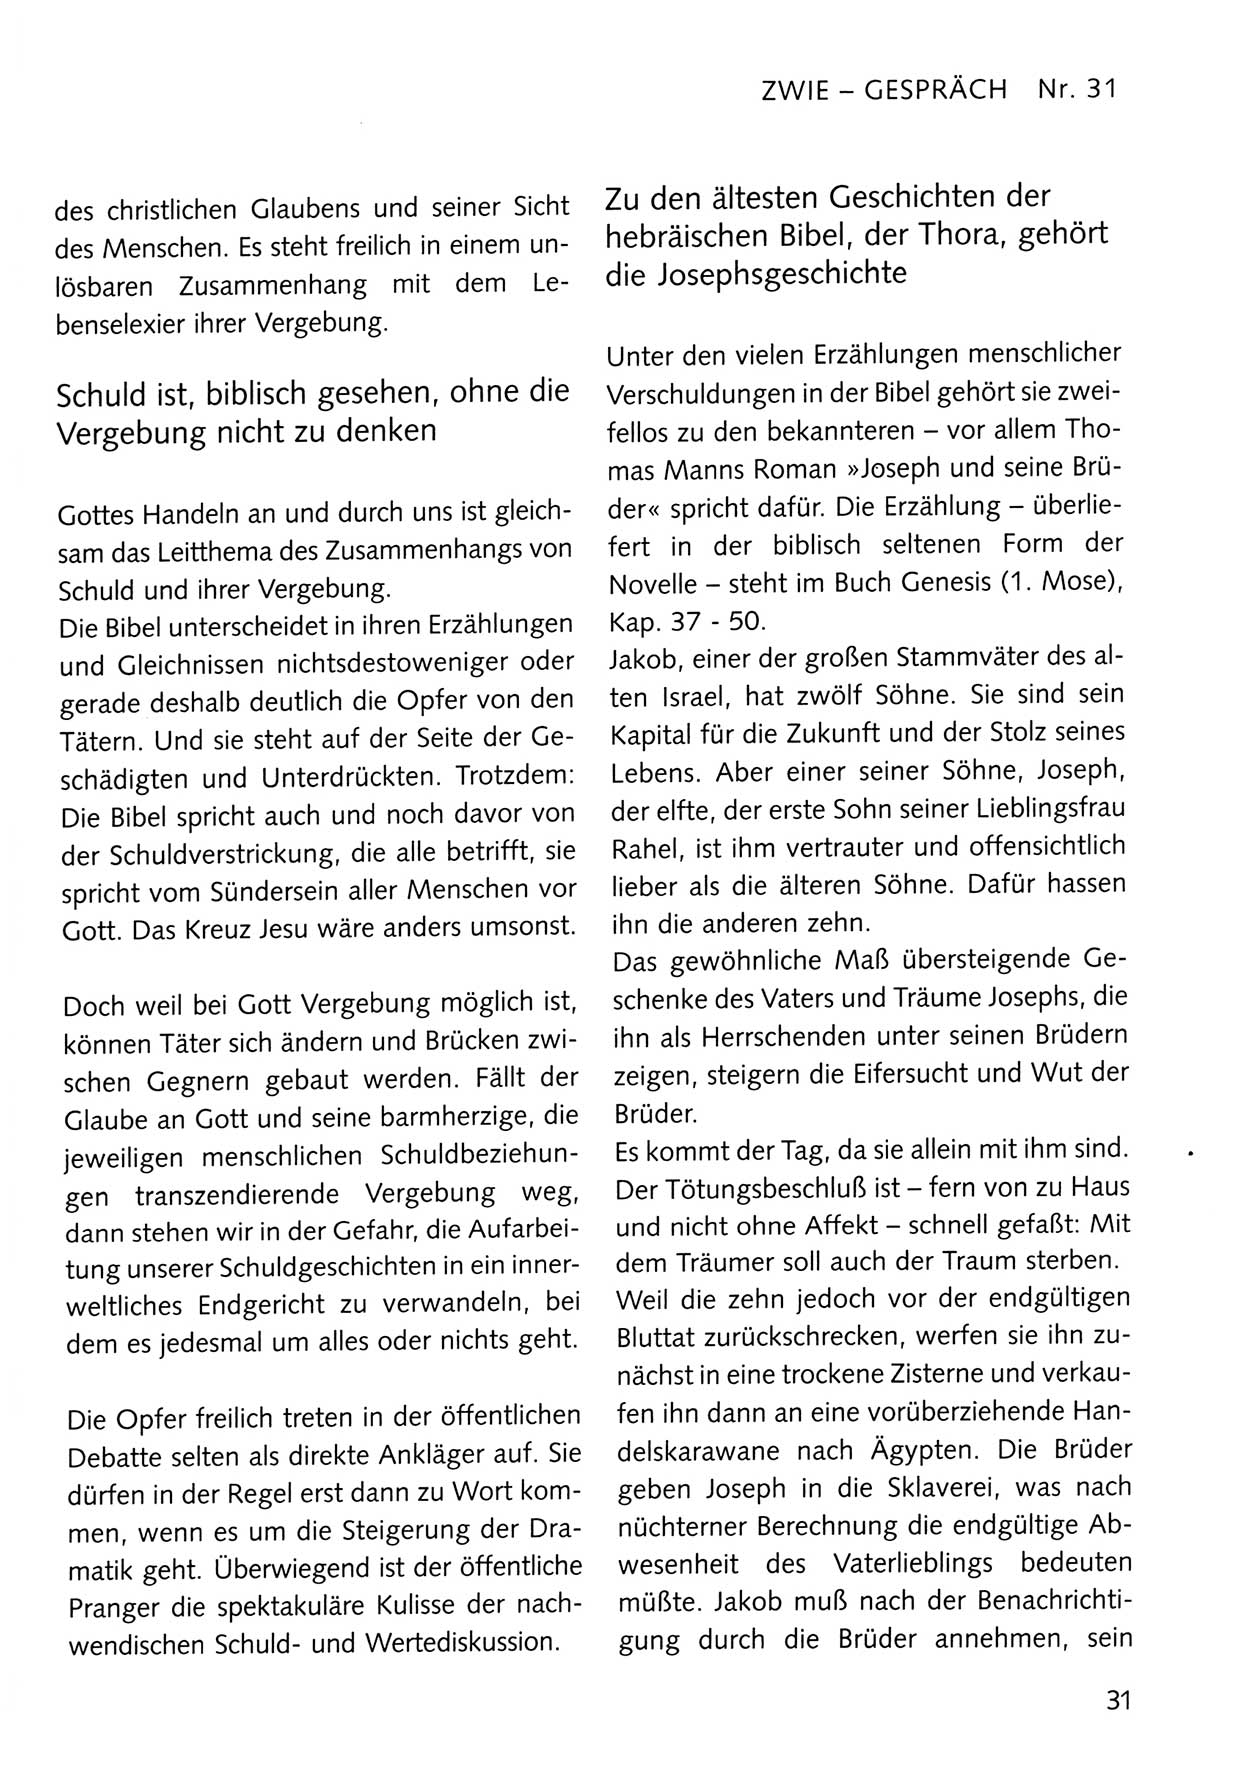 Zwie-Gespräch, Beiträge zum Umgang mit der Staatssicherheits-Vergangenheit [Deutsche Demokratische Republik (DDR)], Ausgabe Nr. 31, Berlin 1995, Seite 31 (Zwie-Gespr. Ausg. 31 1995, S. 31)